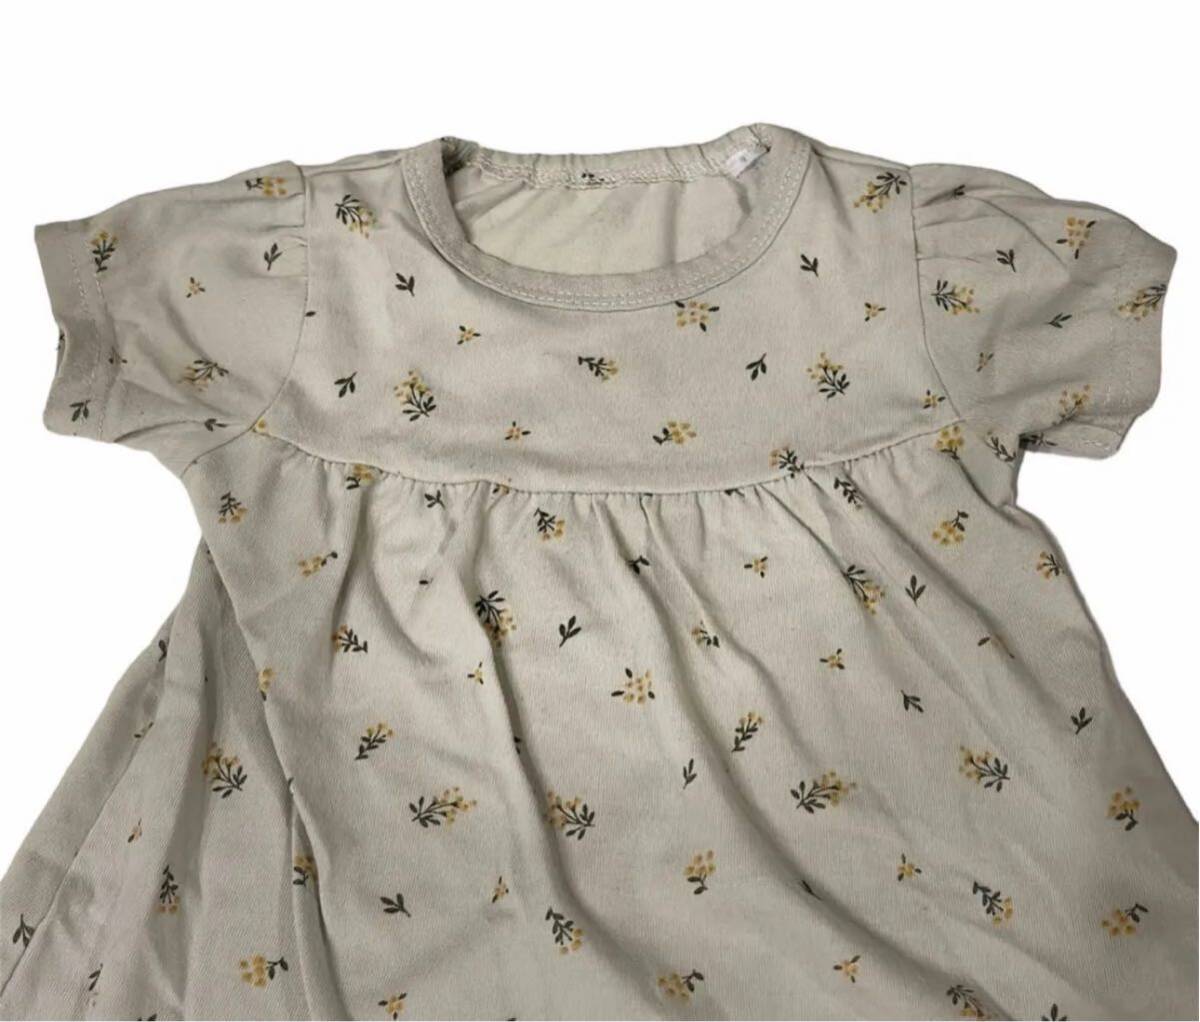  детская одежда короткий рукав выставить 80 размер цветочный принт Kids tops короткий рукав футболка девочка cut and sewn зеленый младенец брюки 